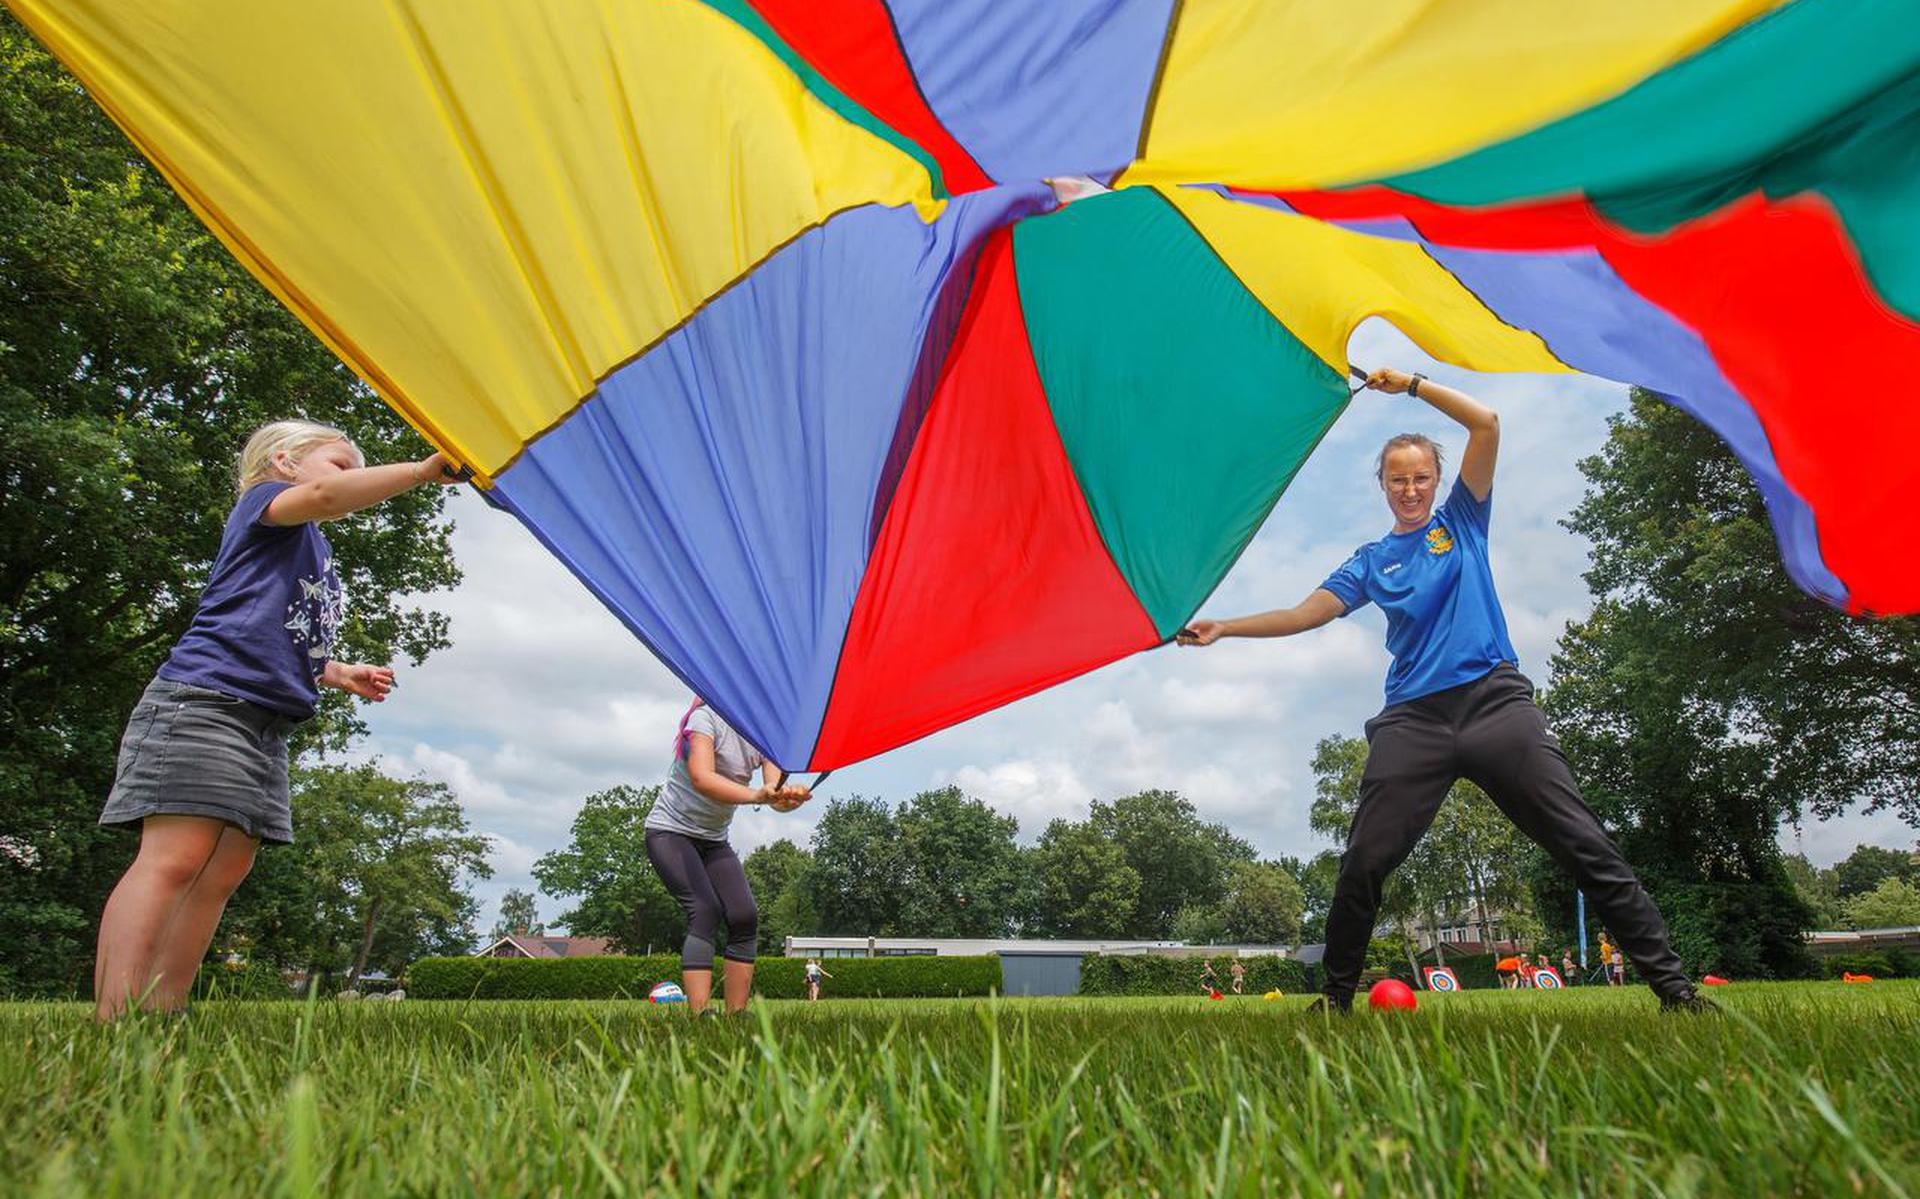 Buurtsportcoach Anouk Pothoven houdt probeert samen met kinderen een bal hoog te houden. 